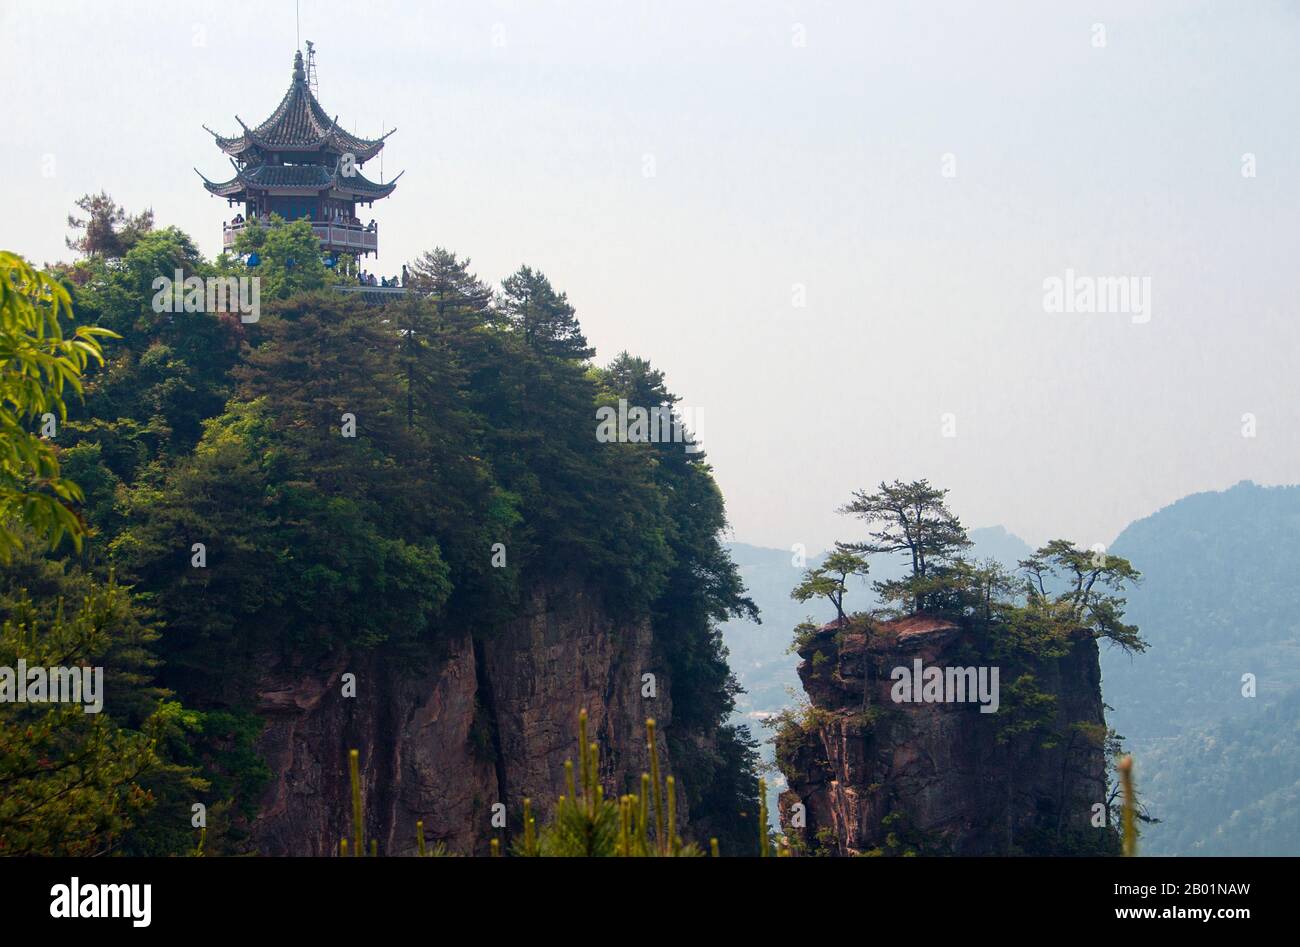 Chine : Pagode des six merveilles, Wulingyuan Scenic Area (Zhangjiajie), province du Hunan. Wulingyuan Scenic Reserve est une zone d'intérêt pittoresque et historique dans la province du Hunan. Il est connu pour ses environ 3 100 piliers de grès quartzite, dont certains mesurent plus de 800 mètres (2 600 pieds) de hauteur et sont un type de formation karstique. En 1992, il a été désigné site du patrimoine mondial de l'UNESCO. Banque D'Images